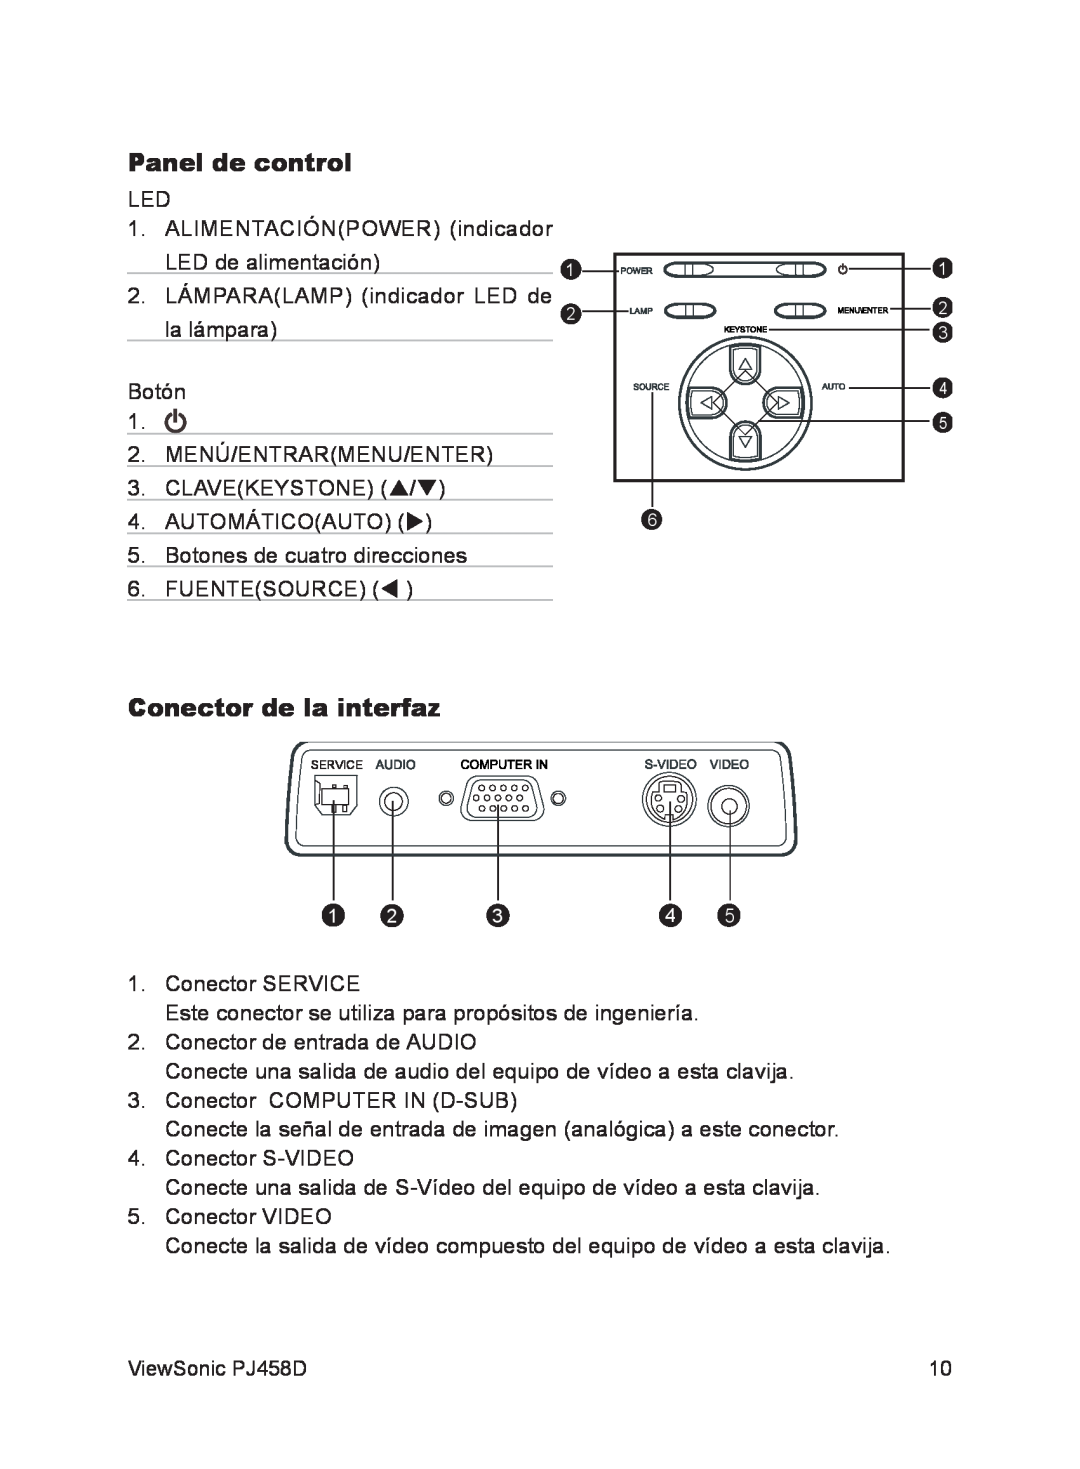 ViewSonic VS10872 manual Panel de control, Conector de la interfaz 